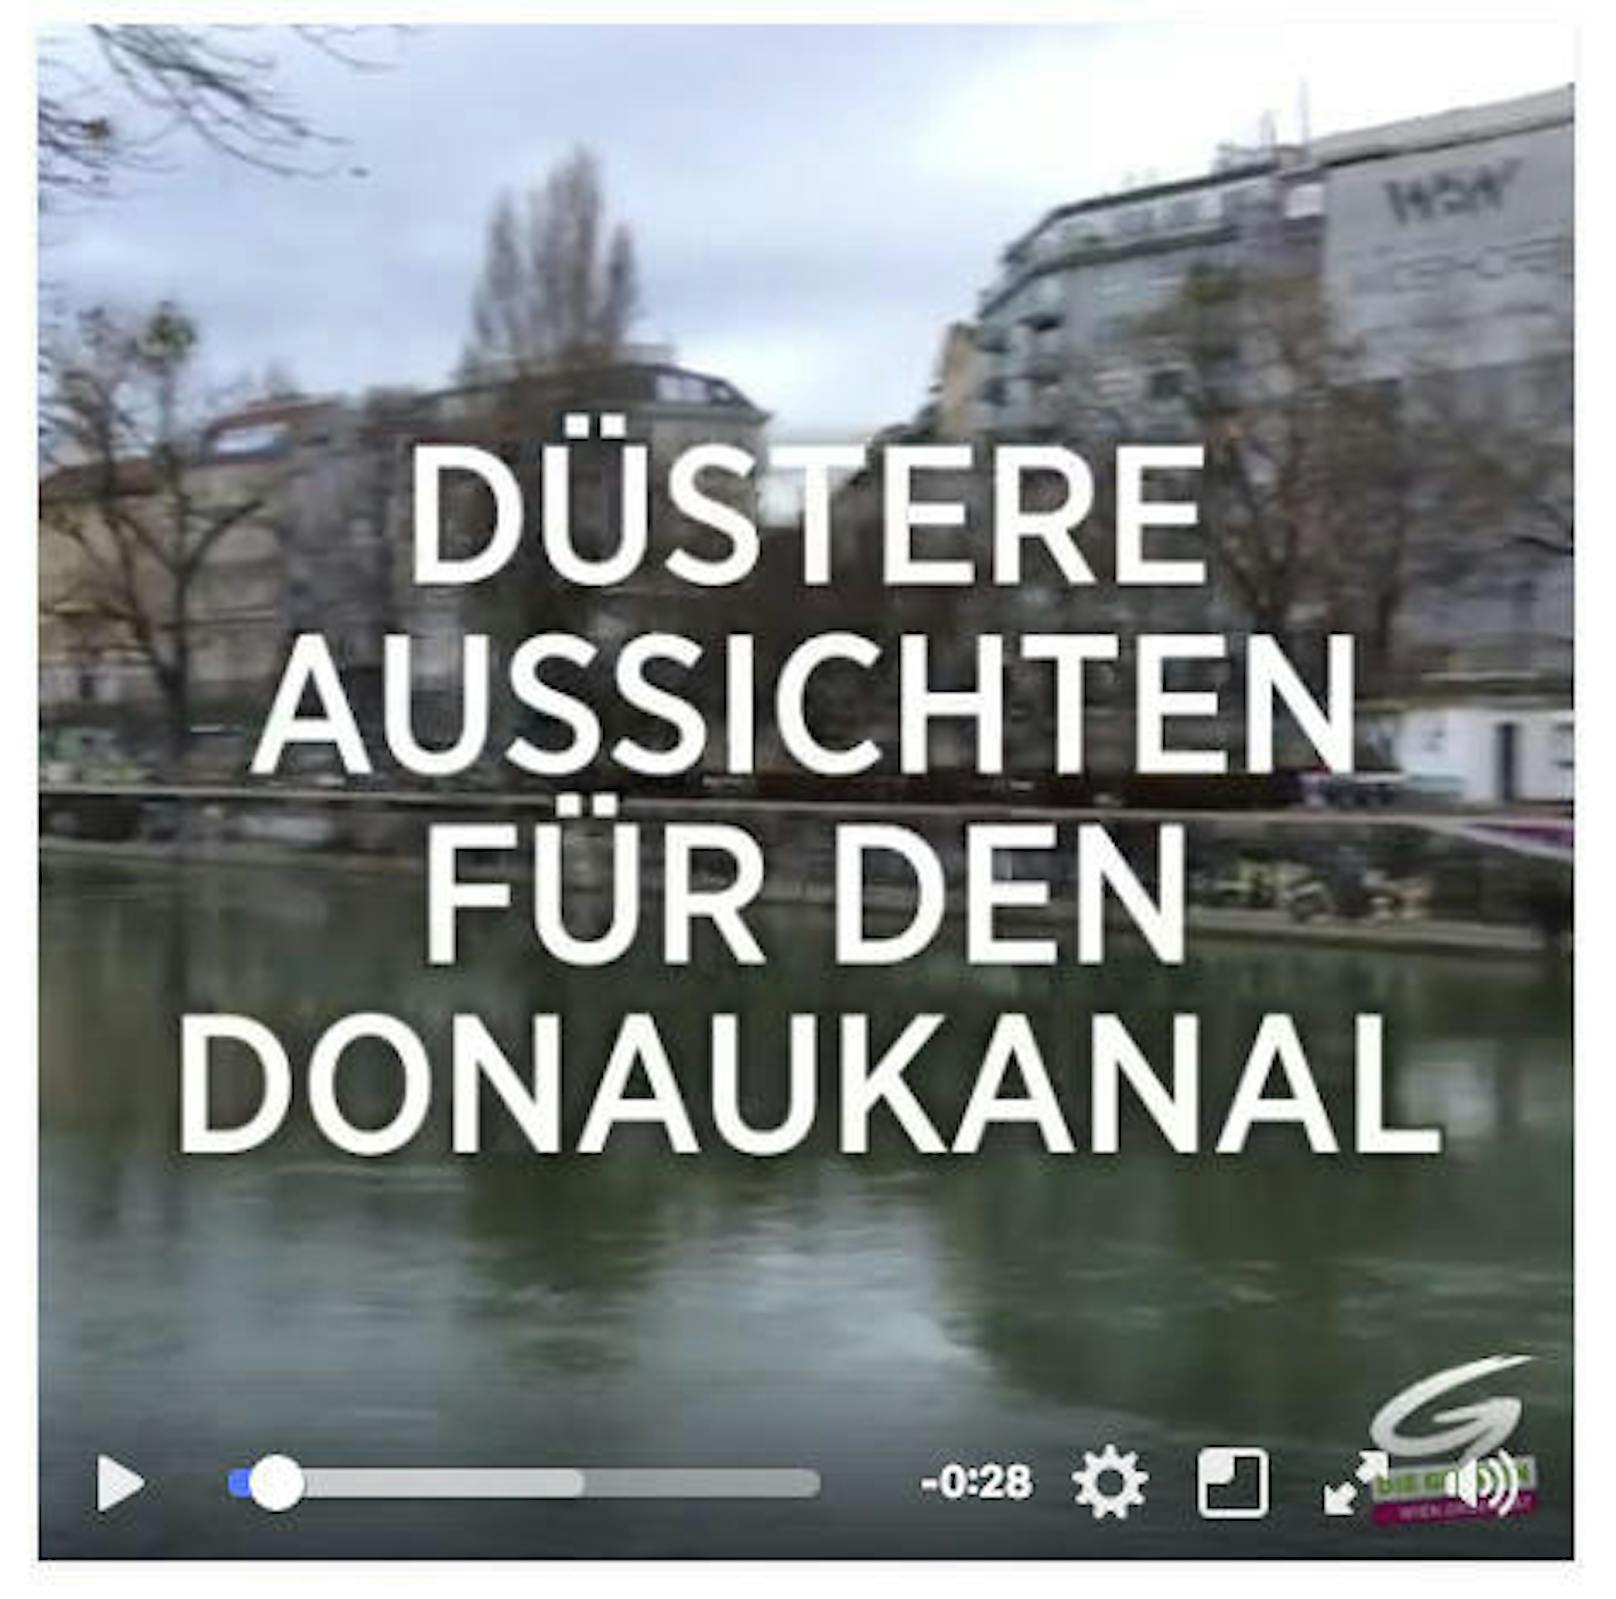 Die Grünen sehen "Düstere Aussichten" für den Wiener Donaukanal. (c) Grüne Wien